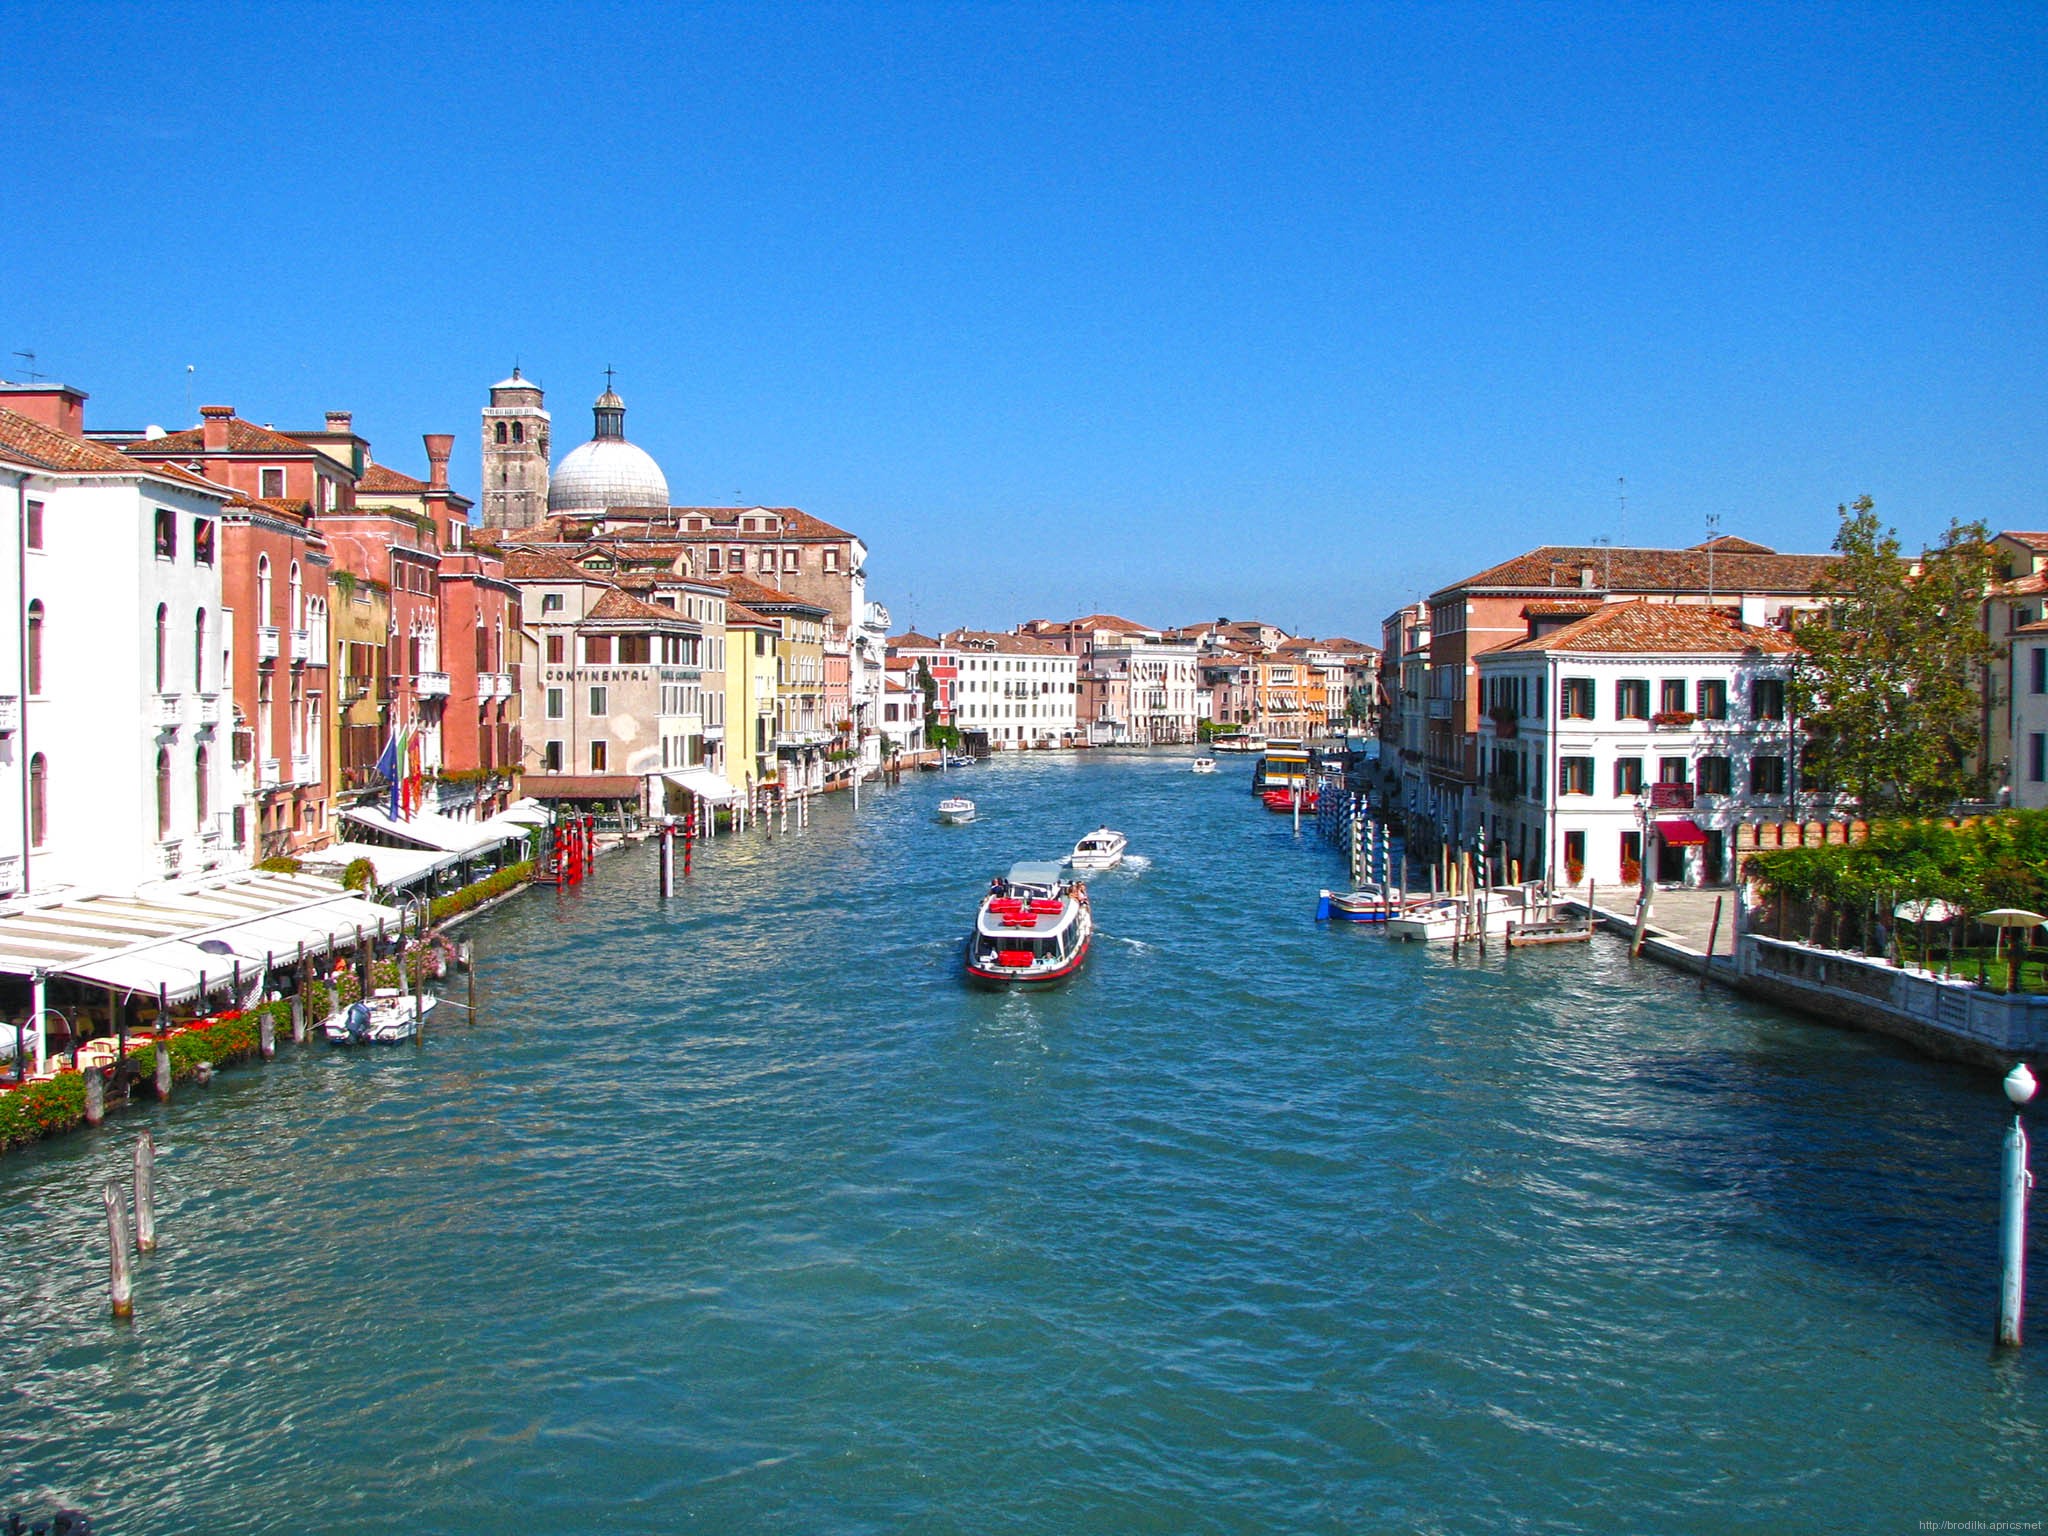 Гранд-канал - вид с моста Ponte degli Scalzi, Венеция, Италия